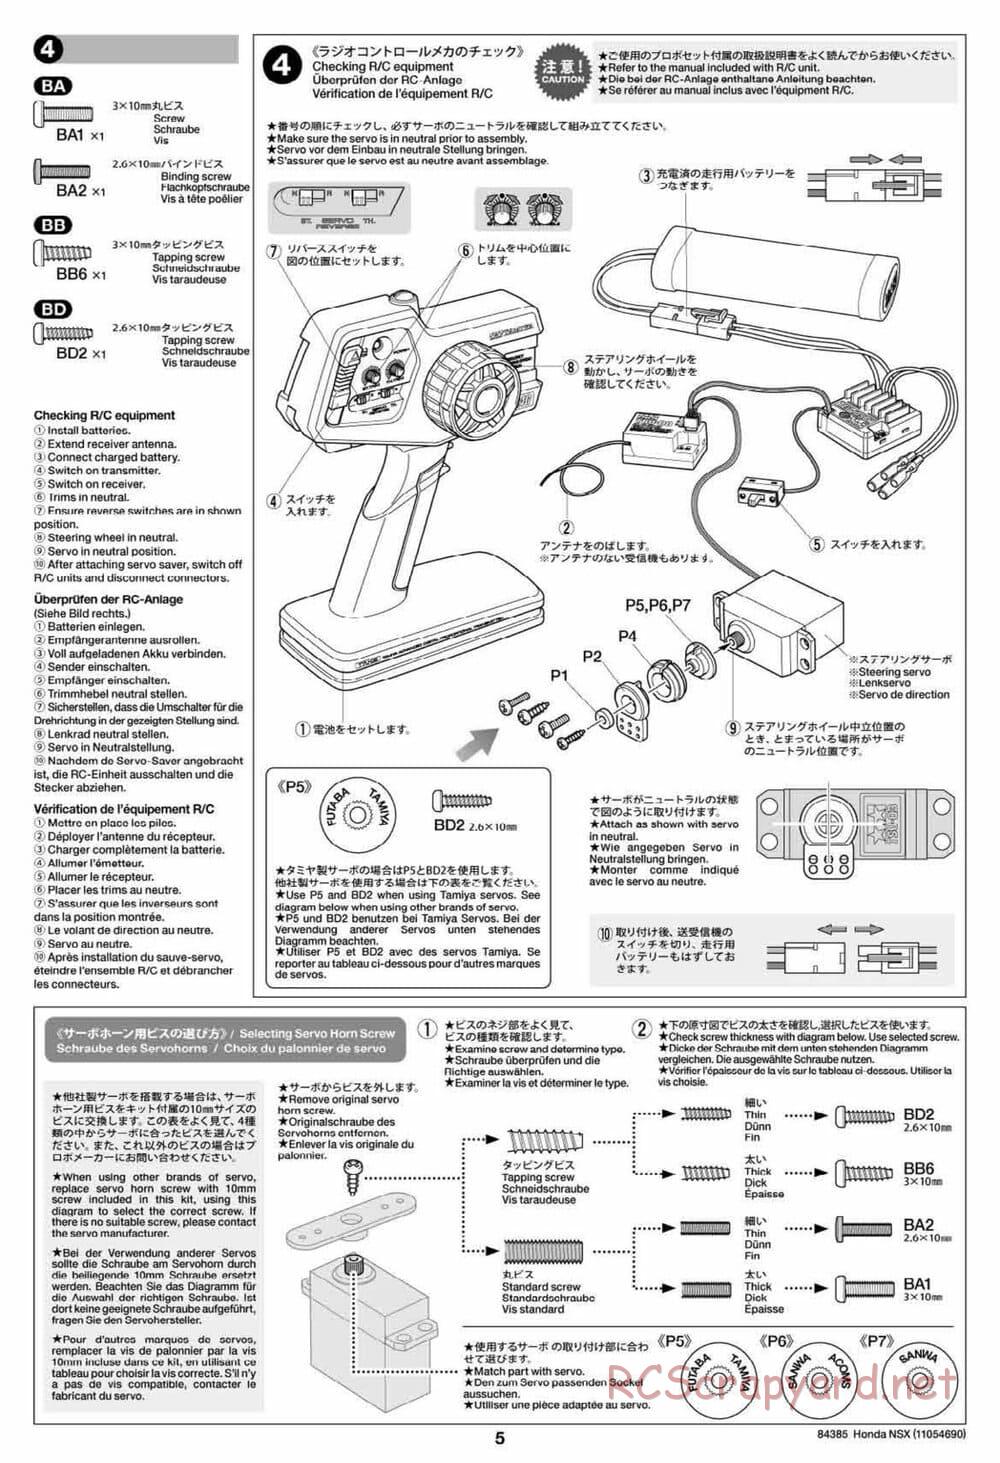 Tamiya - Honda NSX - Group-C Chassis - Manual - Page 5